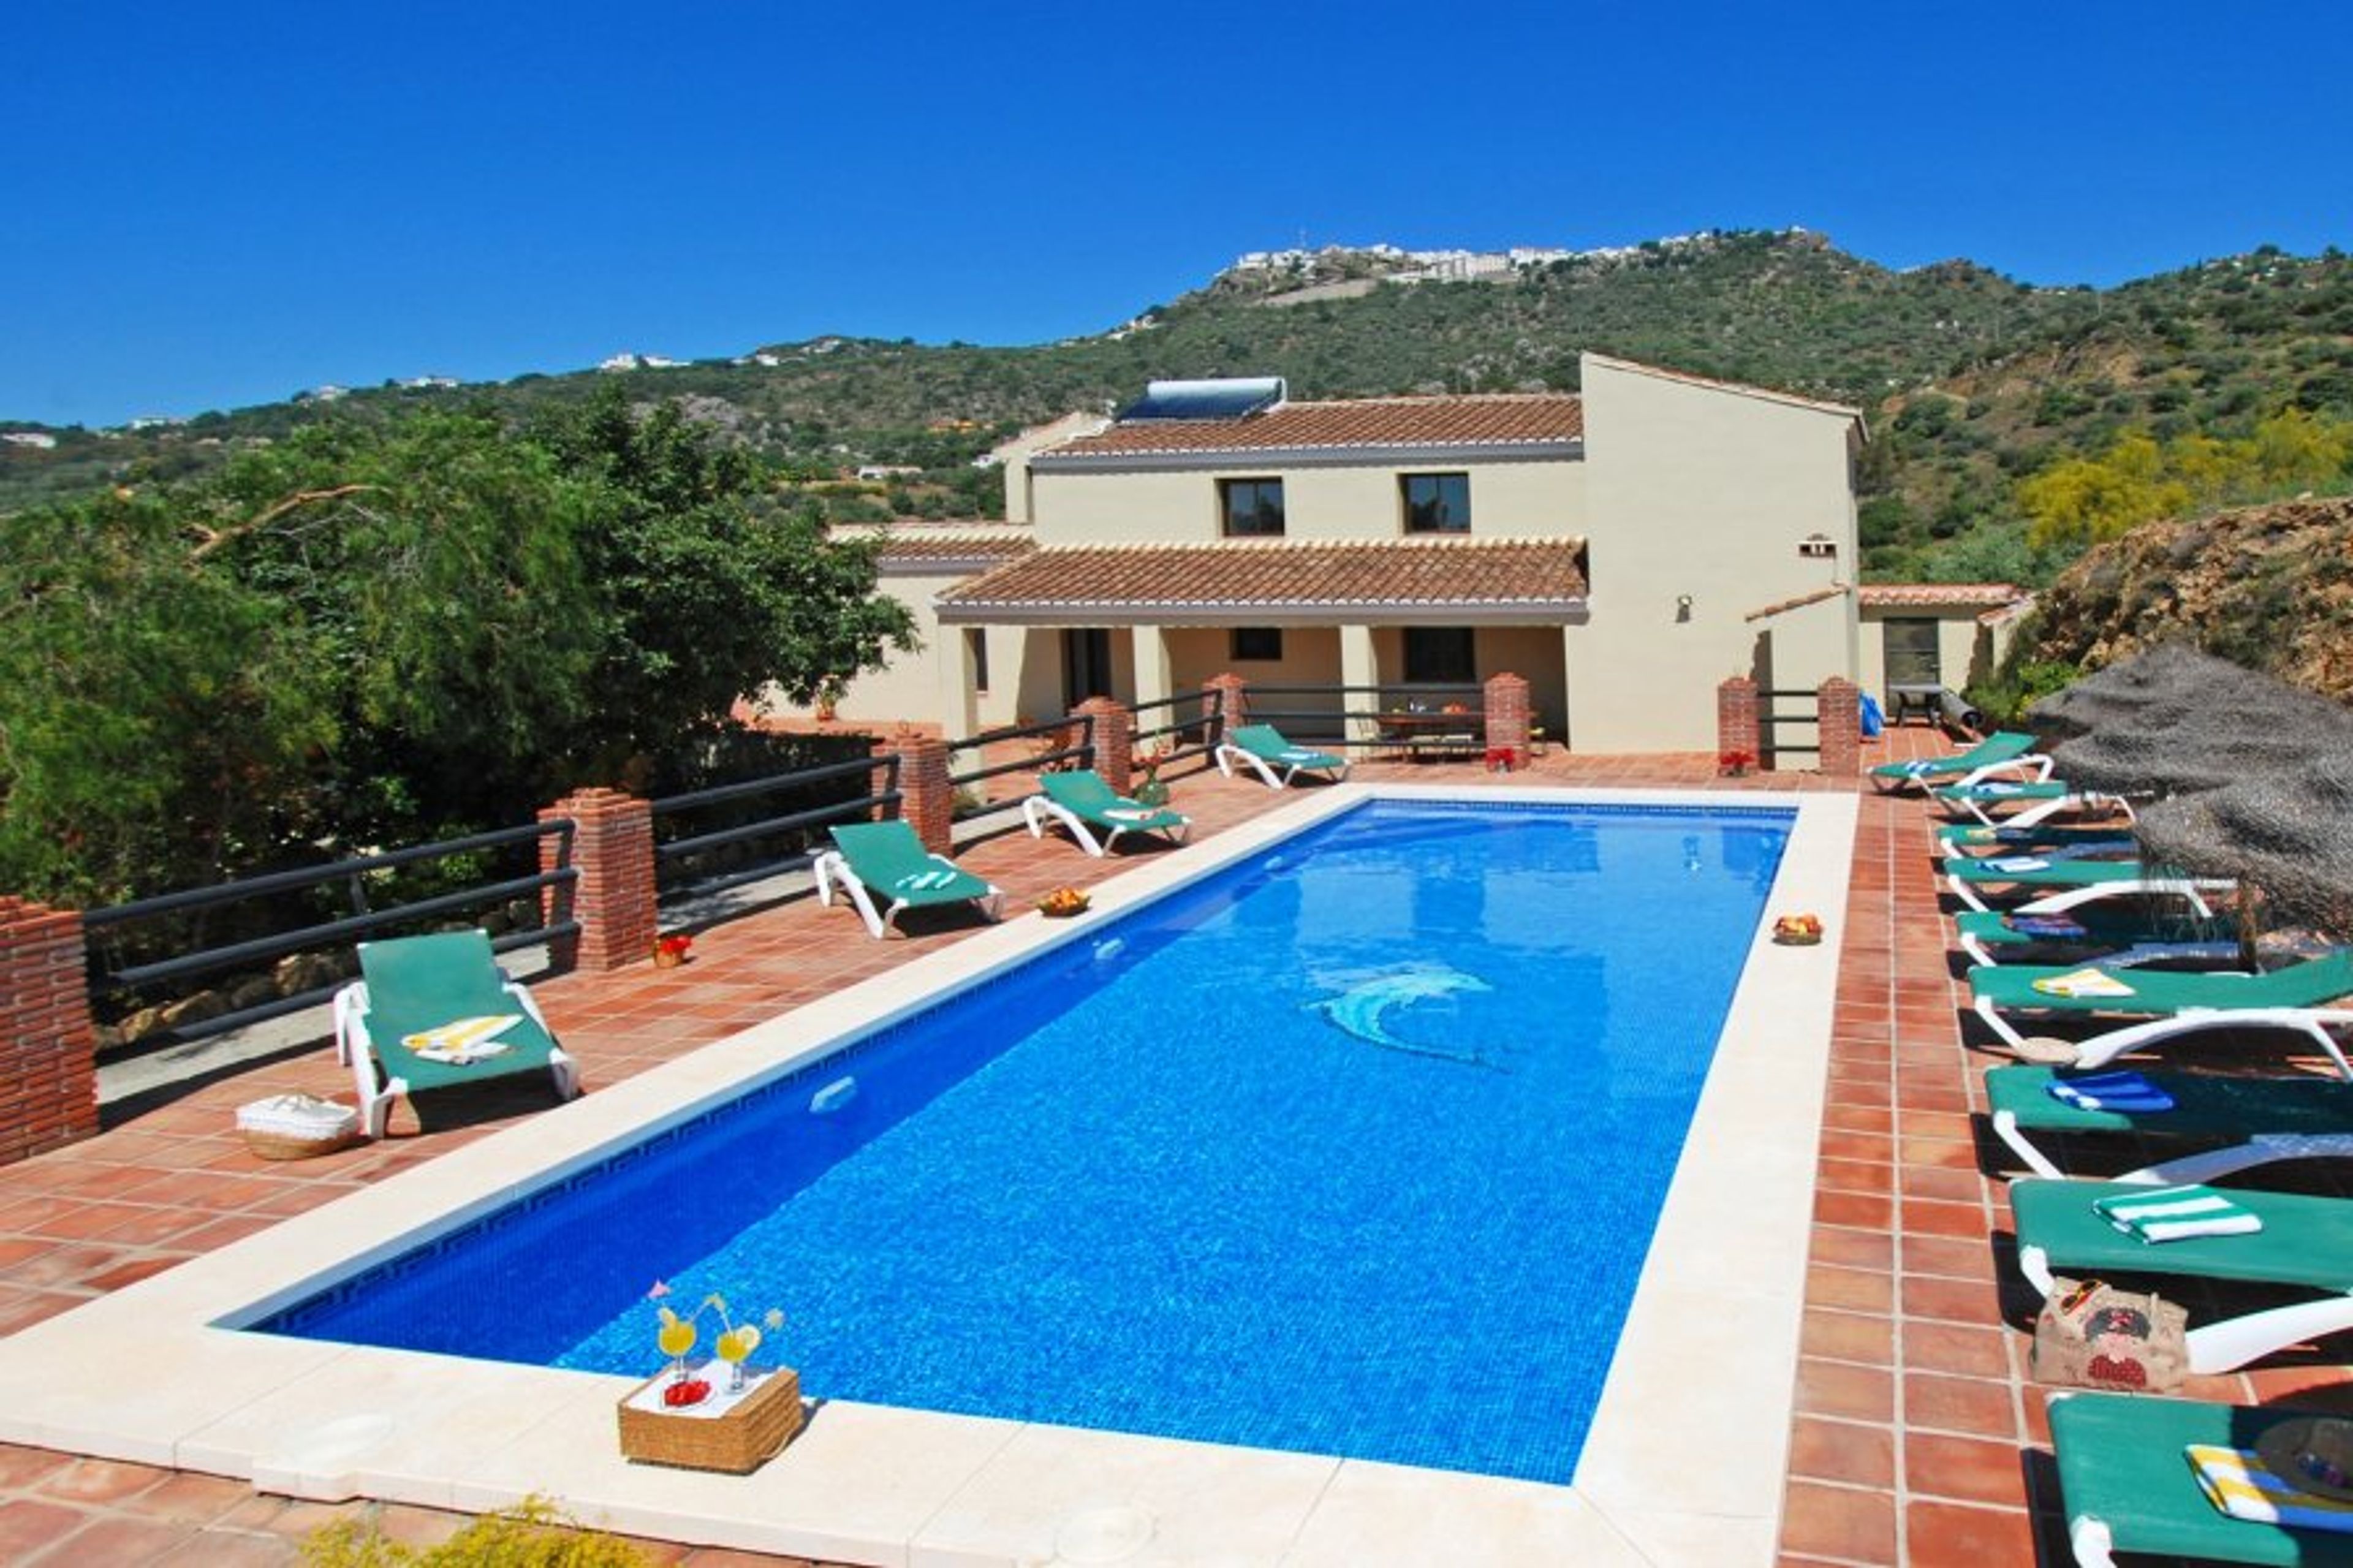 Villa, pool and terraces. 